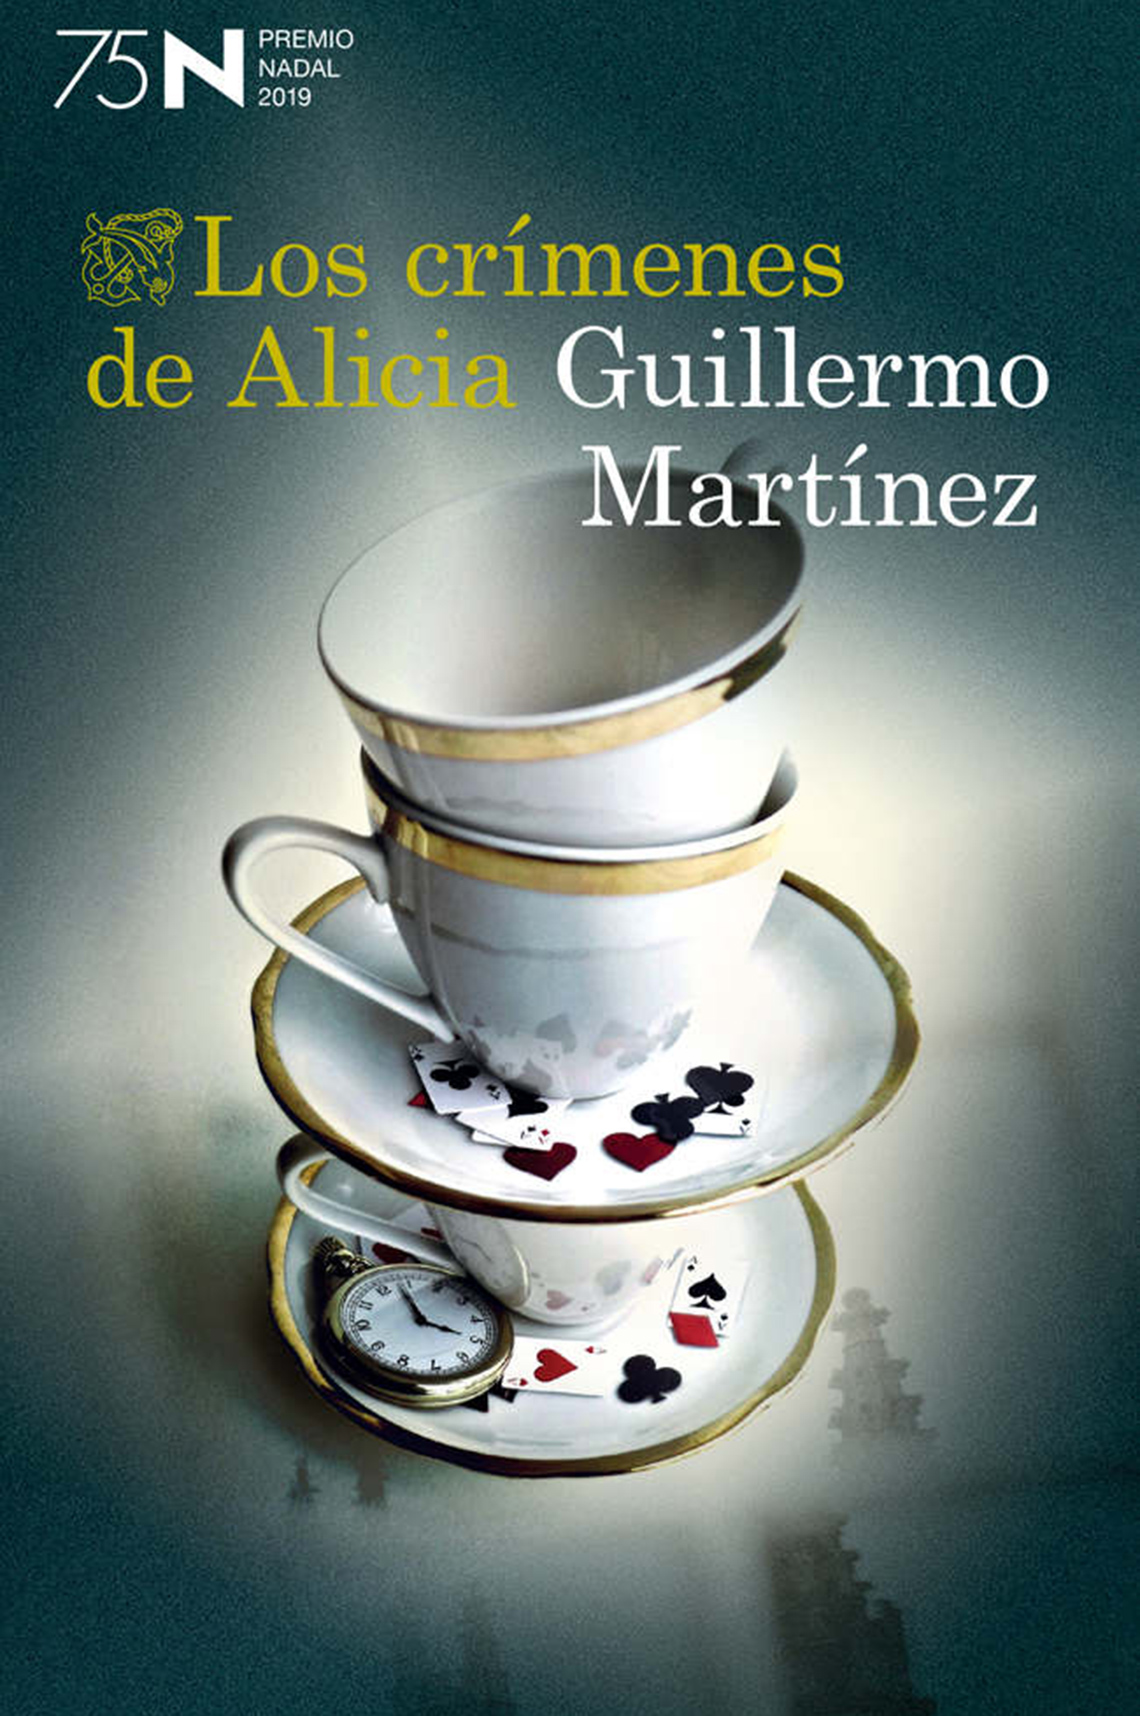 Portada de la novela Los crímenes de Alicia, de Guillermo Martínez.